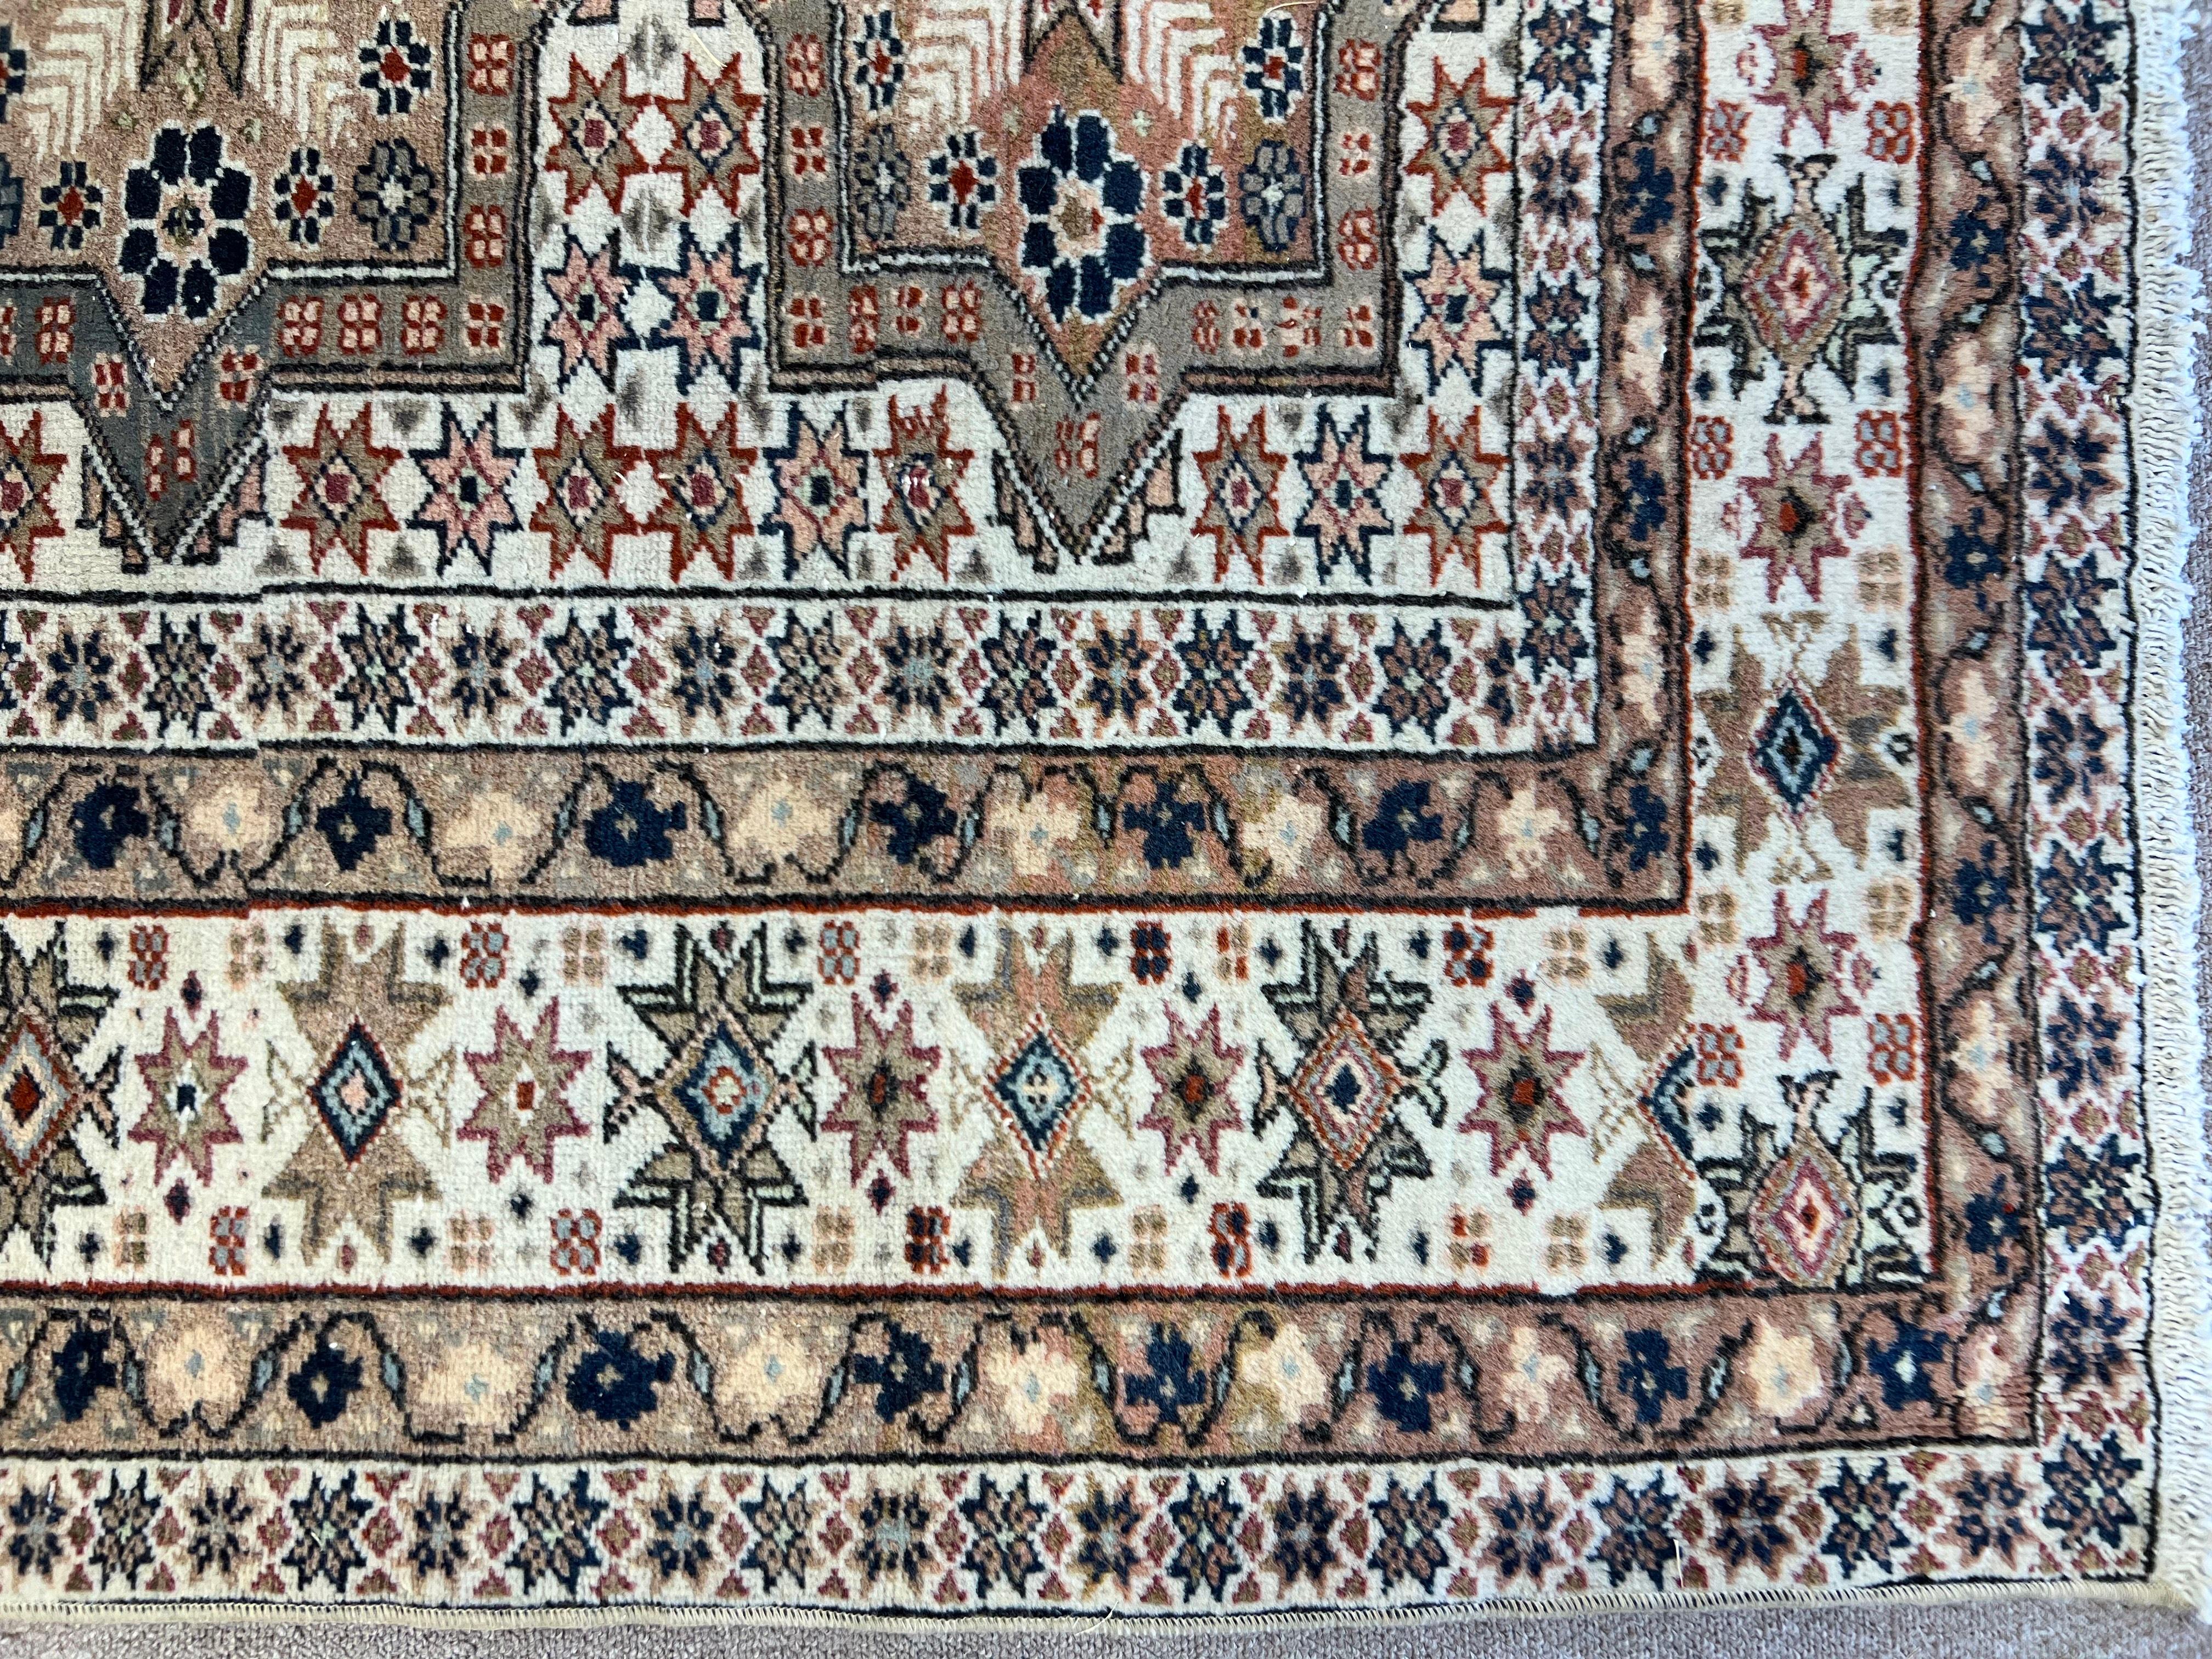 Ein feiner handgeknüpfter Teppich aus Zentralanatolien mit sanften Farben und gut gezeichnetem Muster.
Mittelhoher Wollflor auf Baumwollbasis.
Sehr guter Zustand. Robust und sauber wie ein nagelneuer Teppich (professionell tiefgewaschen)